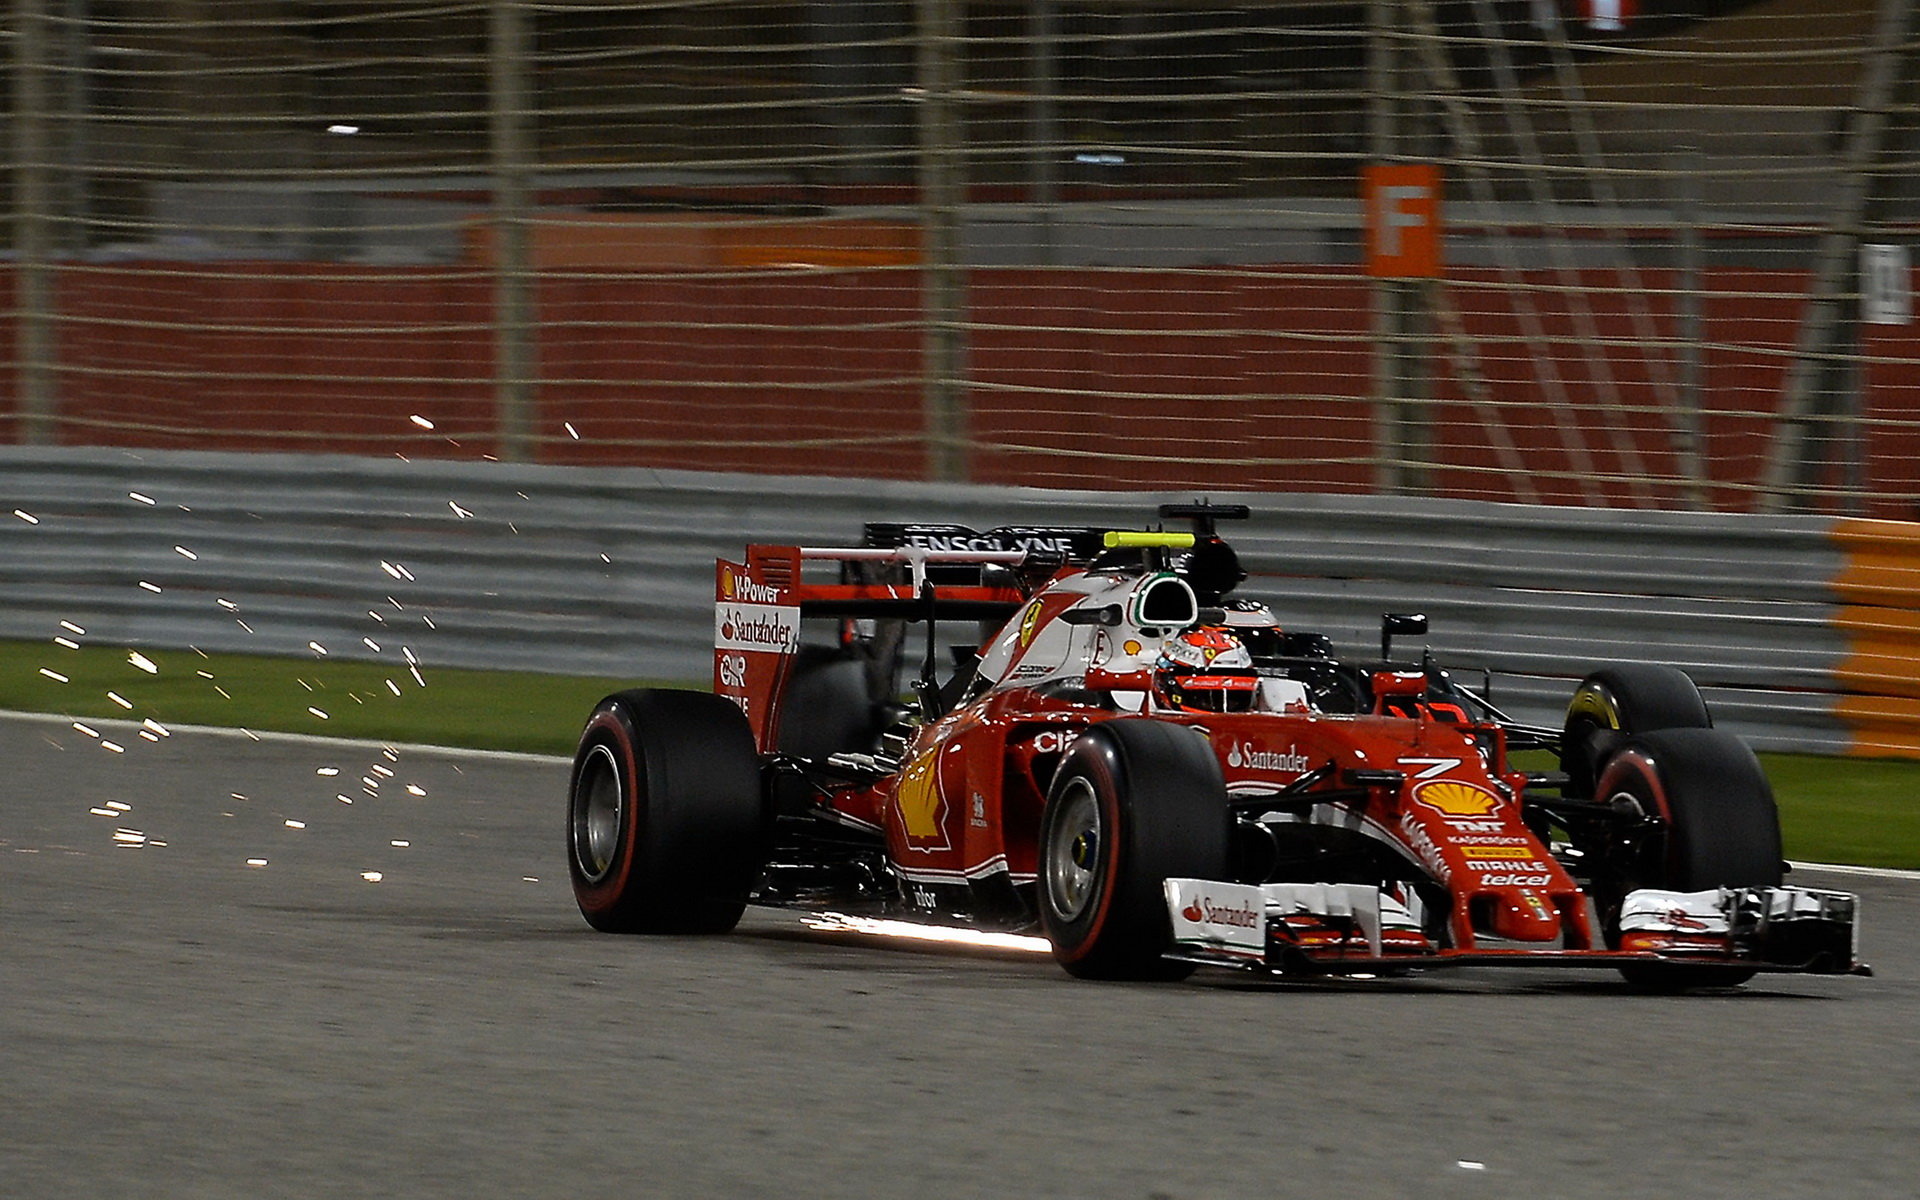 Stříbrný Kimi Räikkönen v Bahrajnu odjel velmi dobrý závod, dosáhl by po lepším startu na vítězství?